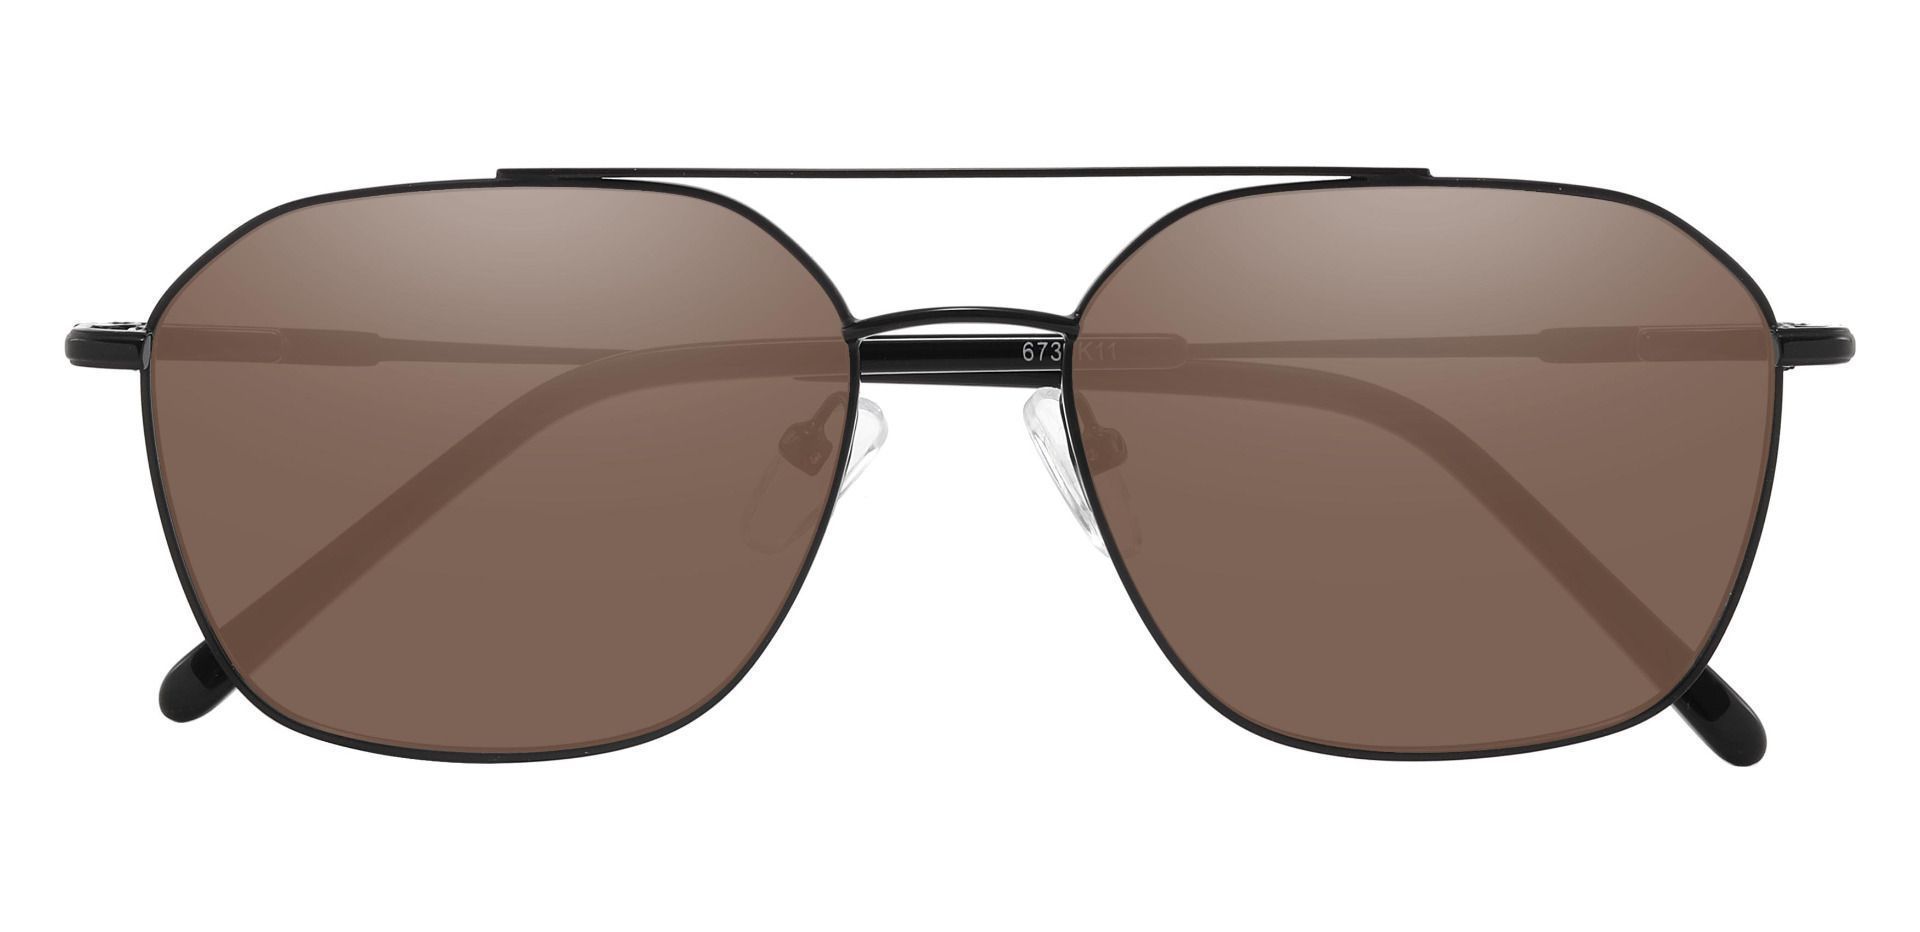 Harvey Aviator Reading Sunglasses - Black Frame With Brown Lenses